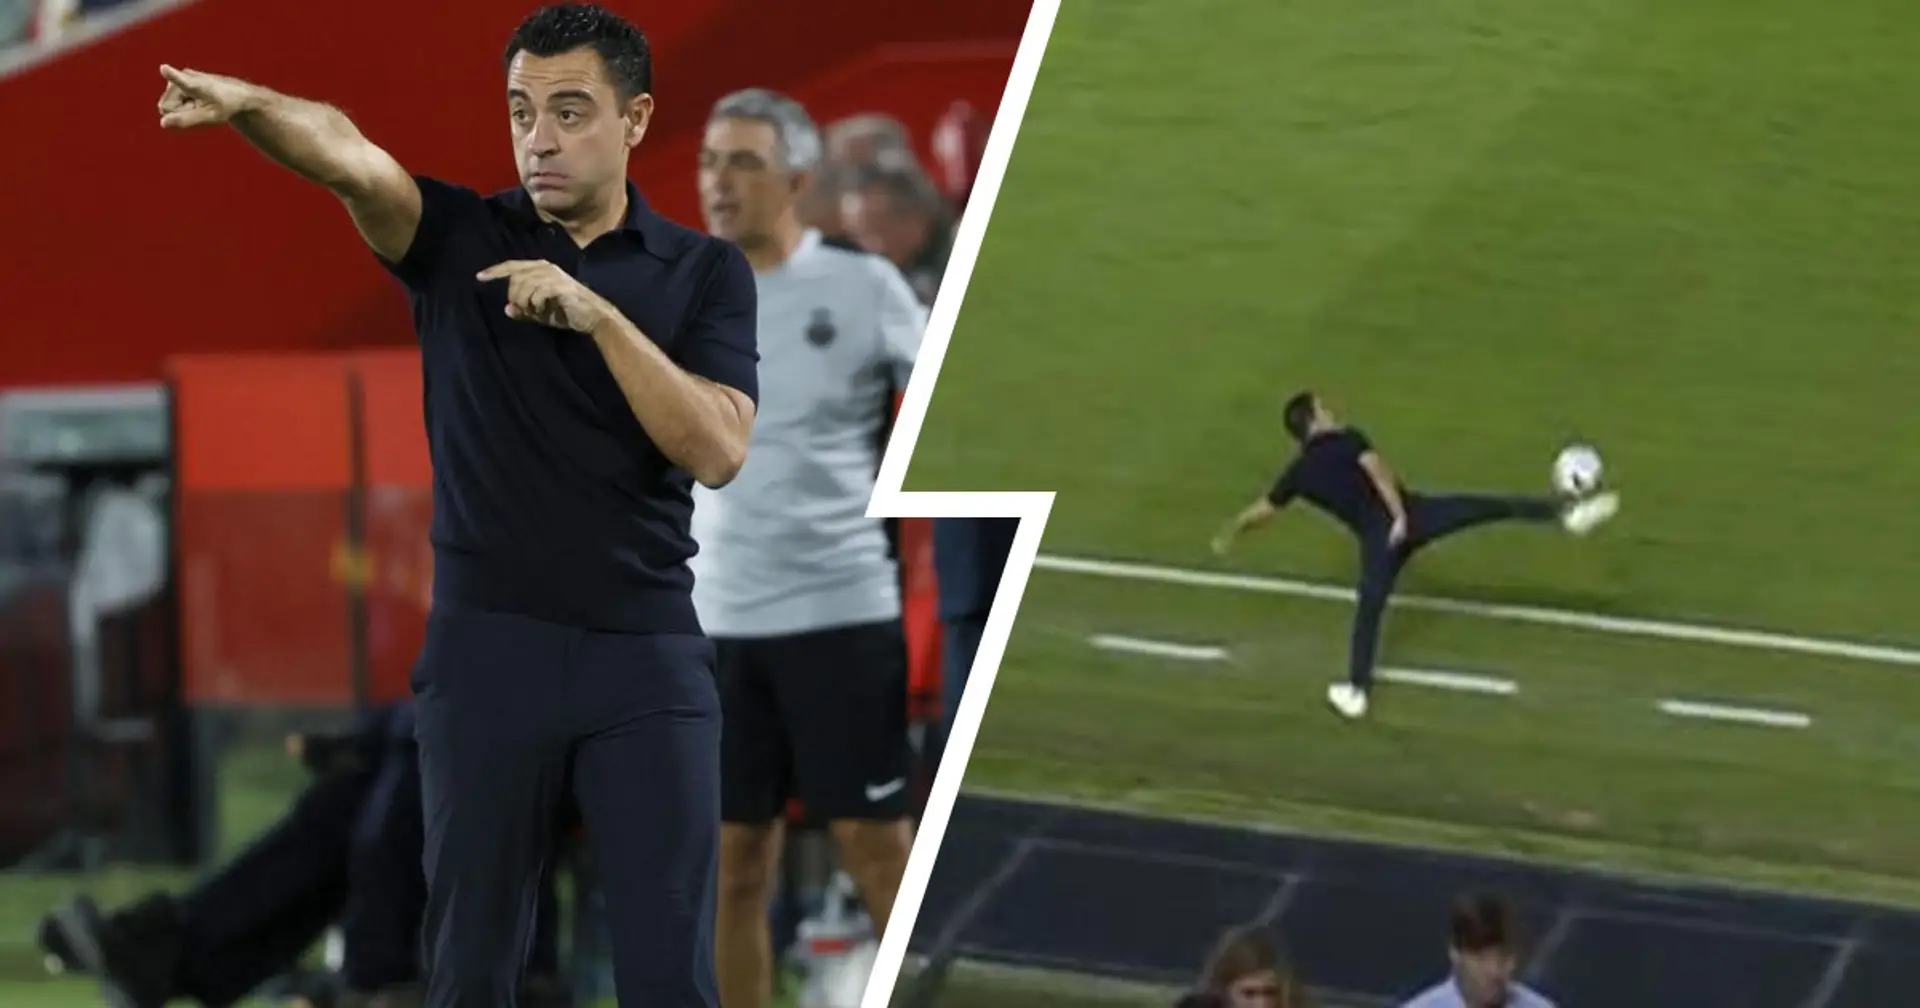 Xavi, che stop al volo! L'incredibile gesto tecnico dell'allenatore del Barcellona nel match col Maiorca